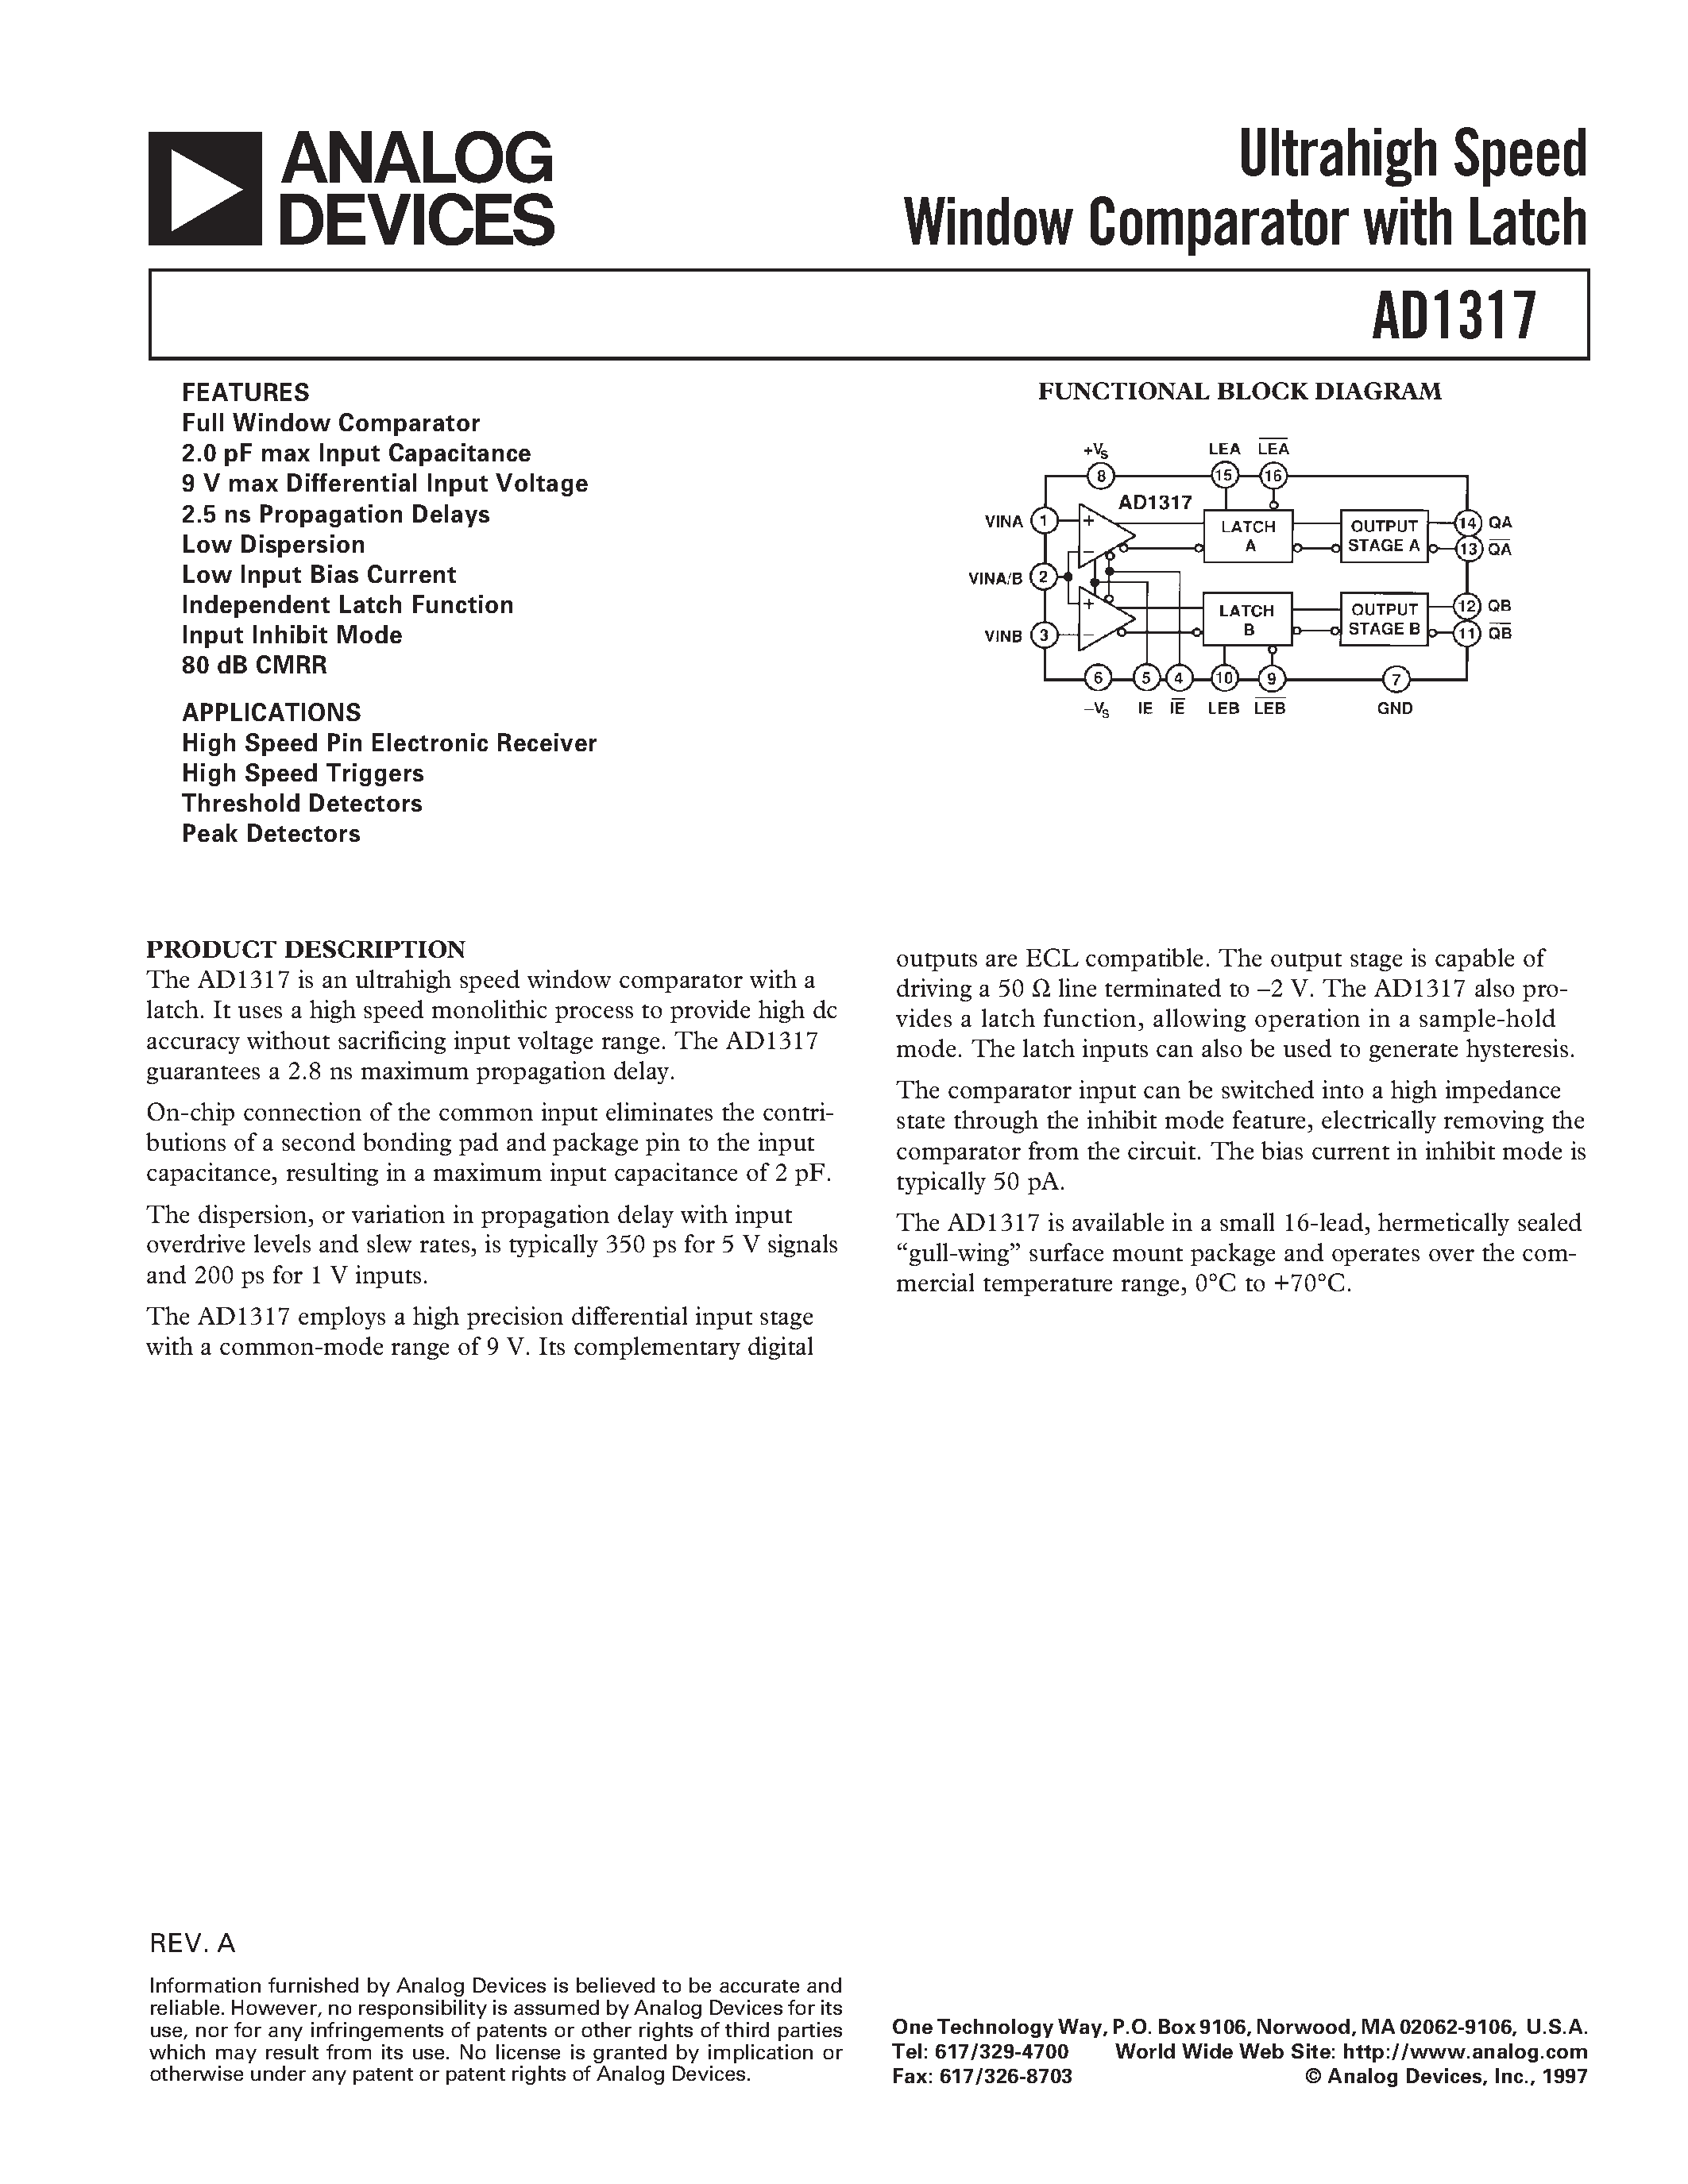 Даташит AD1317KZ - Ultrahigh Speed Window Comparator with Latch страница 1